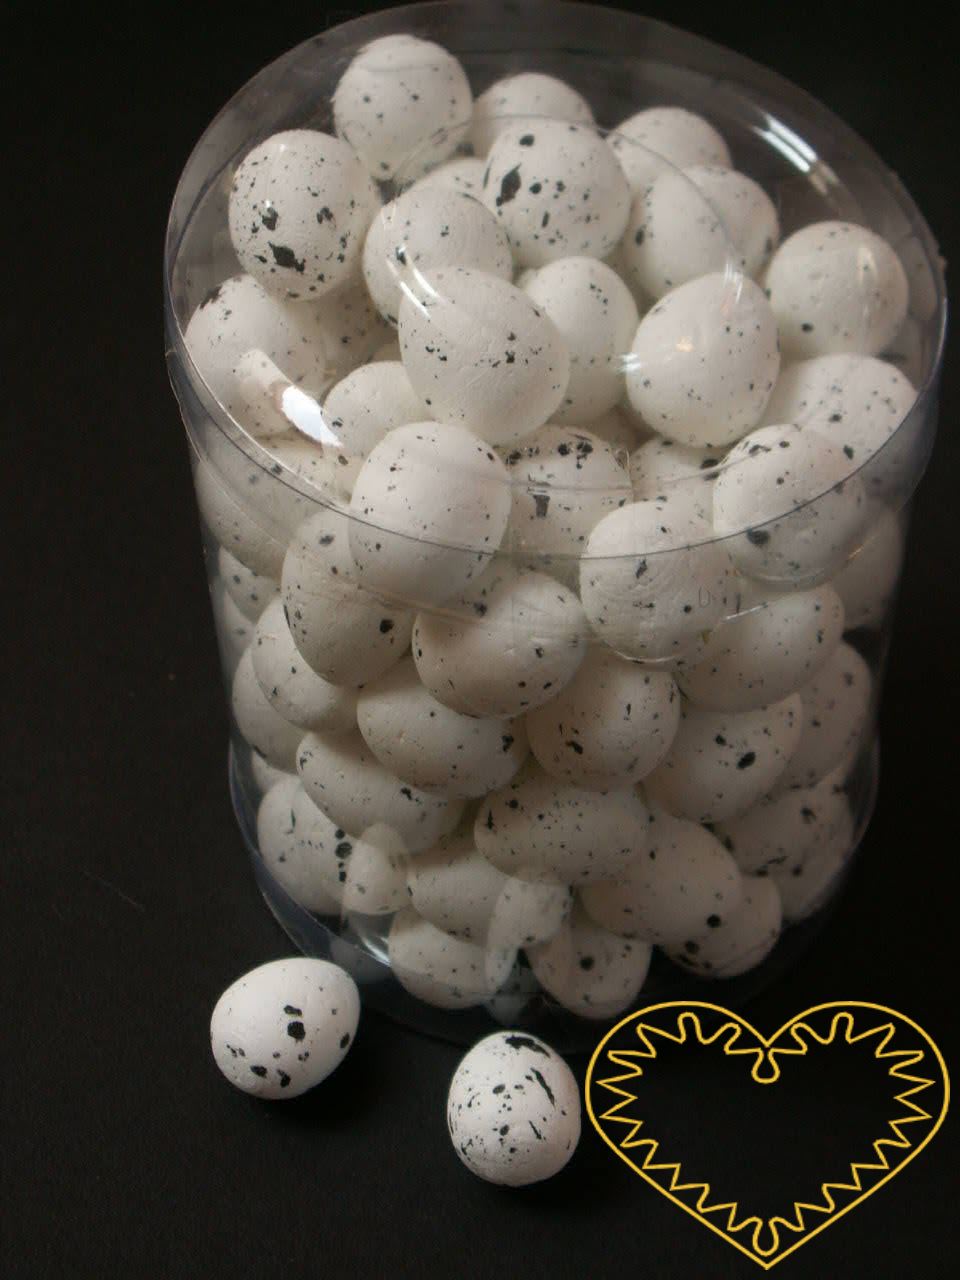 Bílá polystyrenová vajíčka výška 2 cm - sada 95 kusů. Vhodné k nejrůznějšímu tvoření - lepení, barvení, malování, k přípravě dekorací, k aranžování.